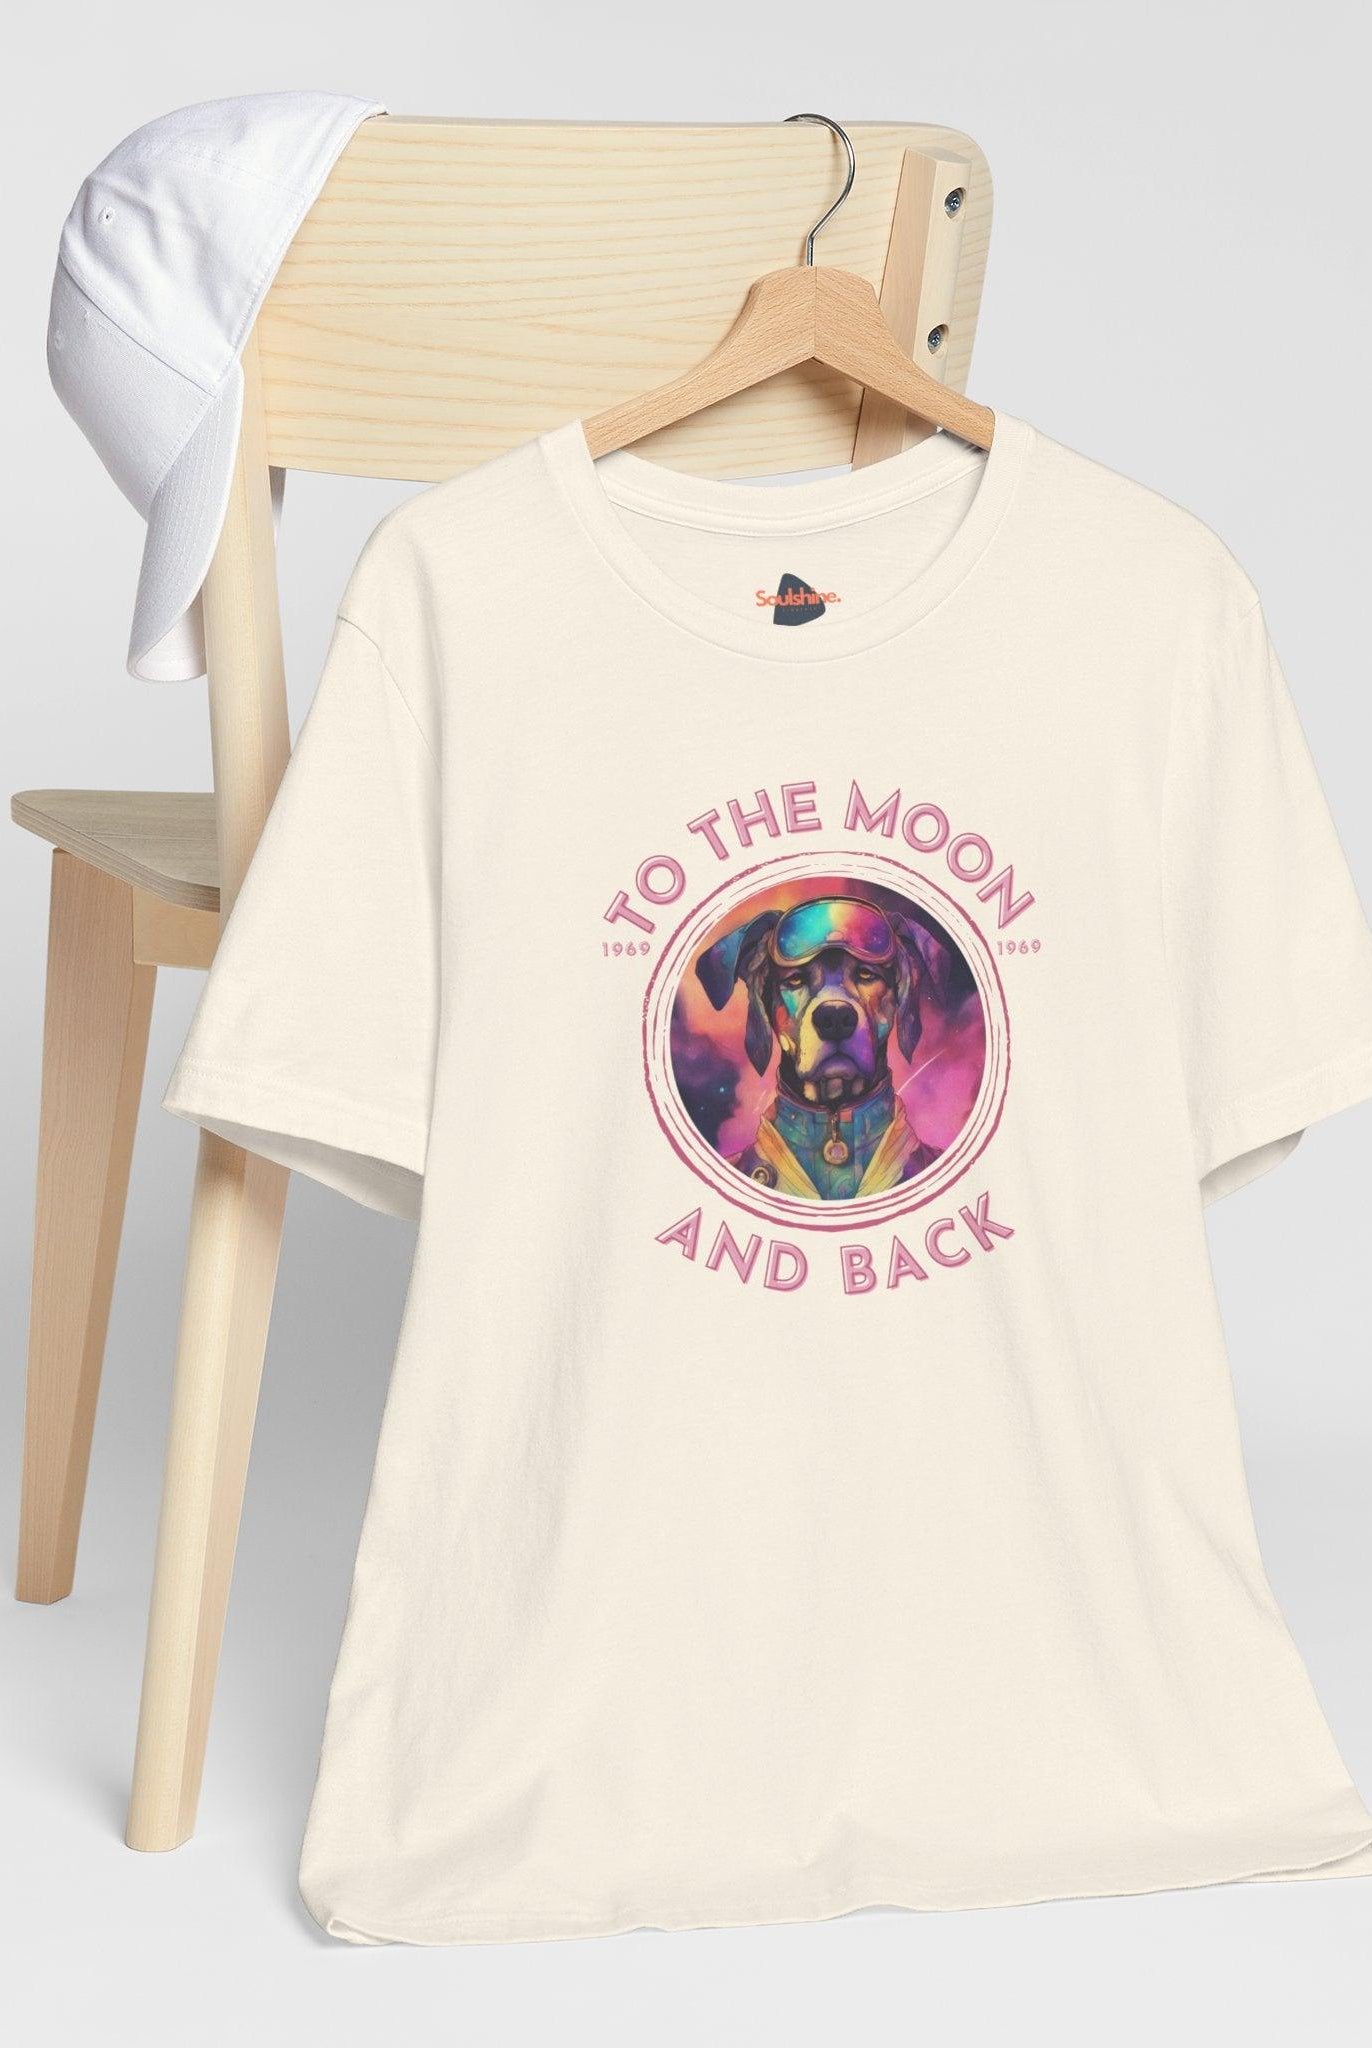 To the moon and back - Astrodog - Dog T-Shirt - Soulshinecreators - Unisex Jersey Short Sleeve Tee - US - Soulshinecreators